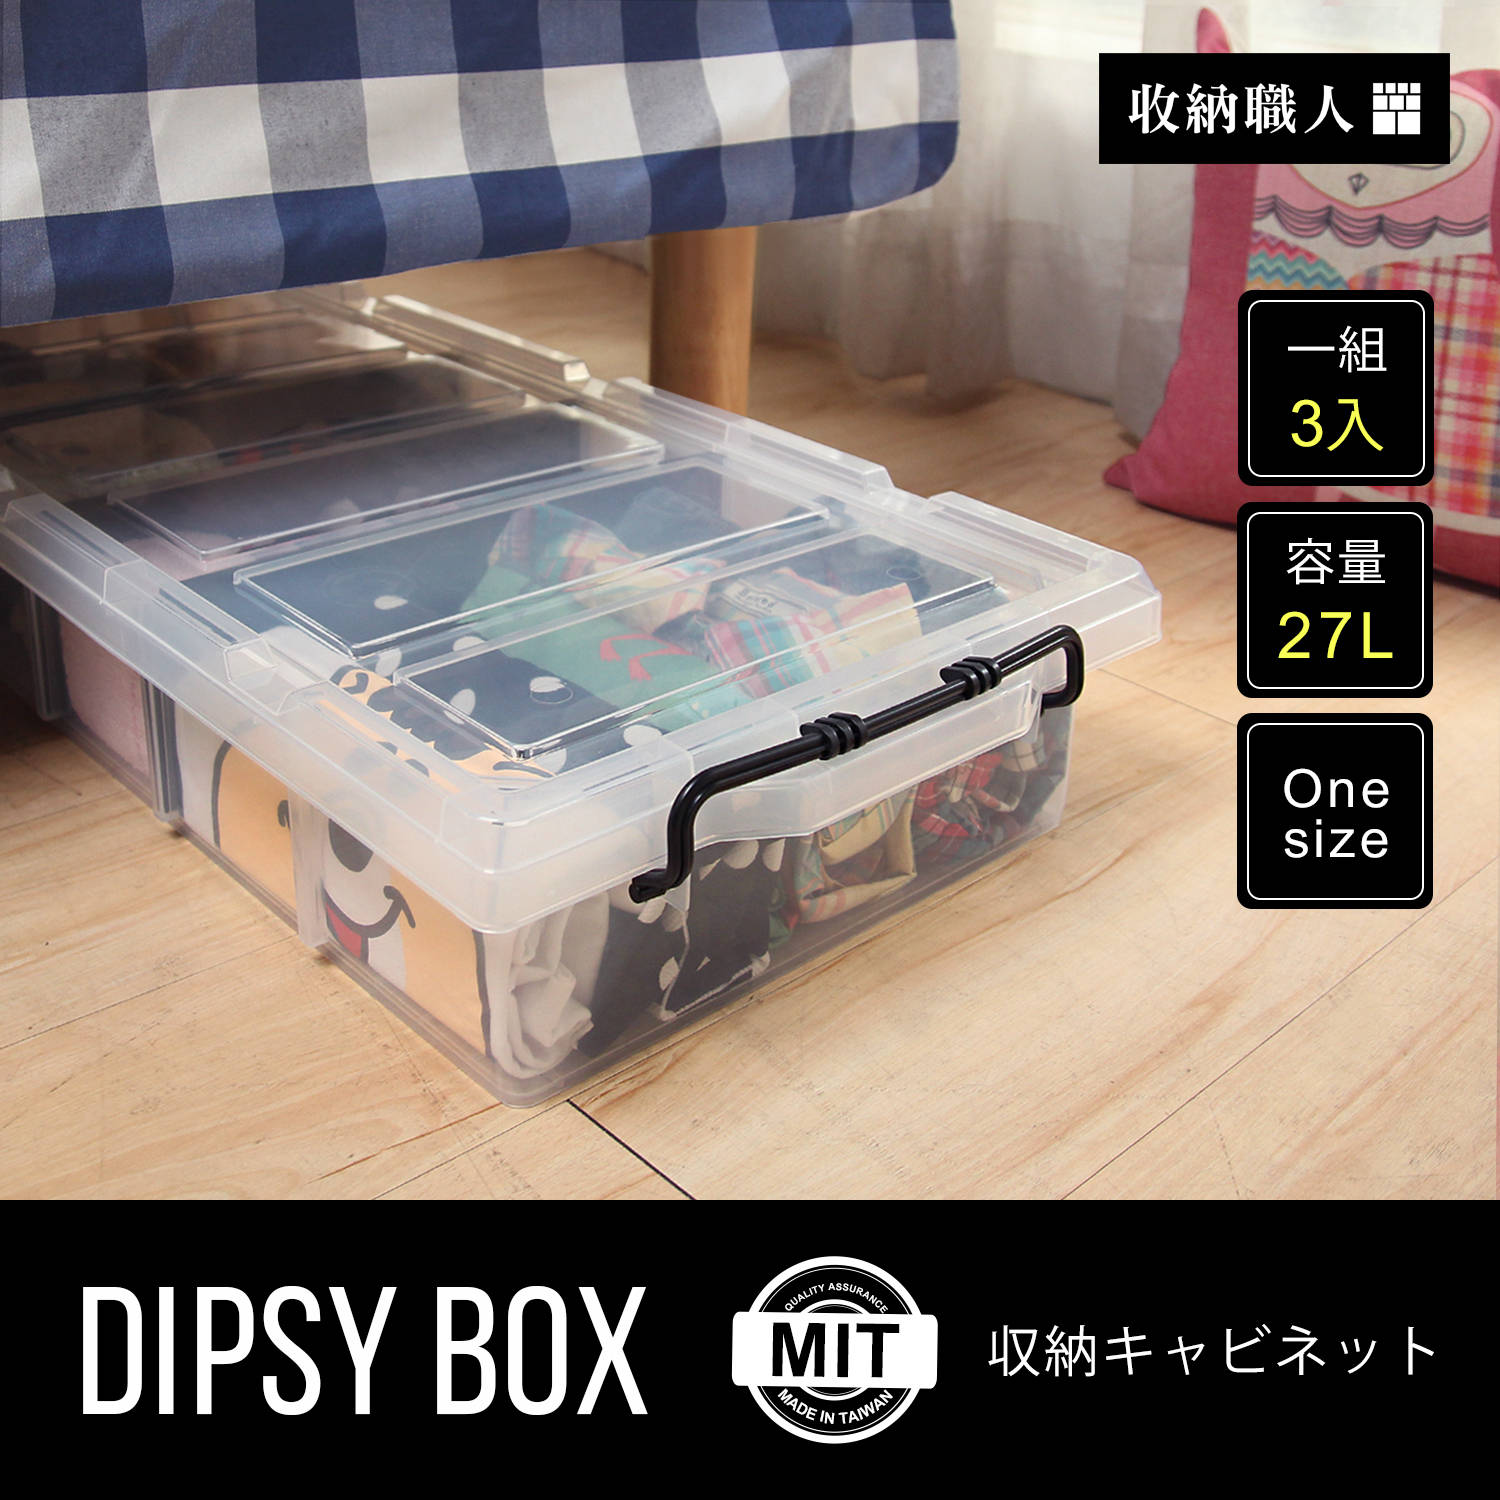 【收納職人】DIPSY 狄西透明六格分類收納箱/床底整理箱。三入組 / H&D / 日本MODERN DECO